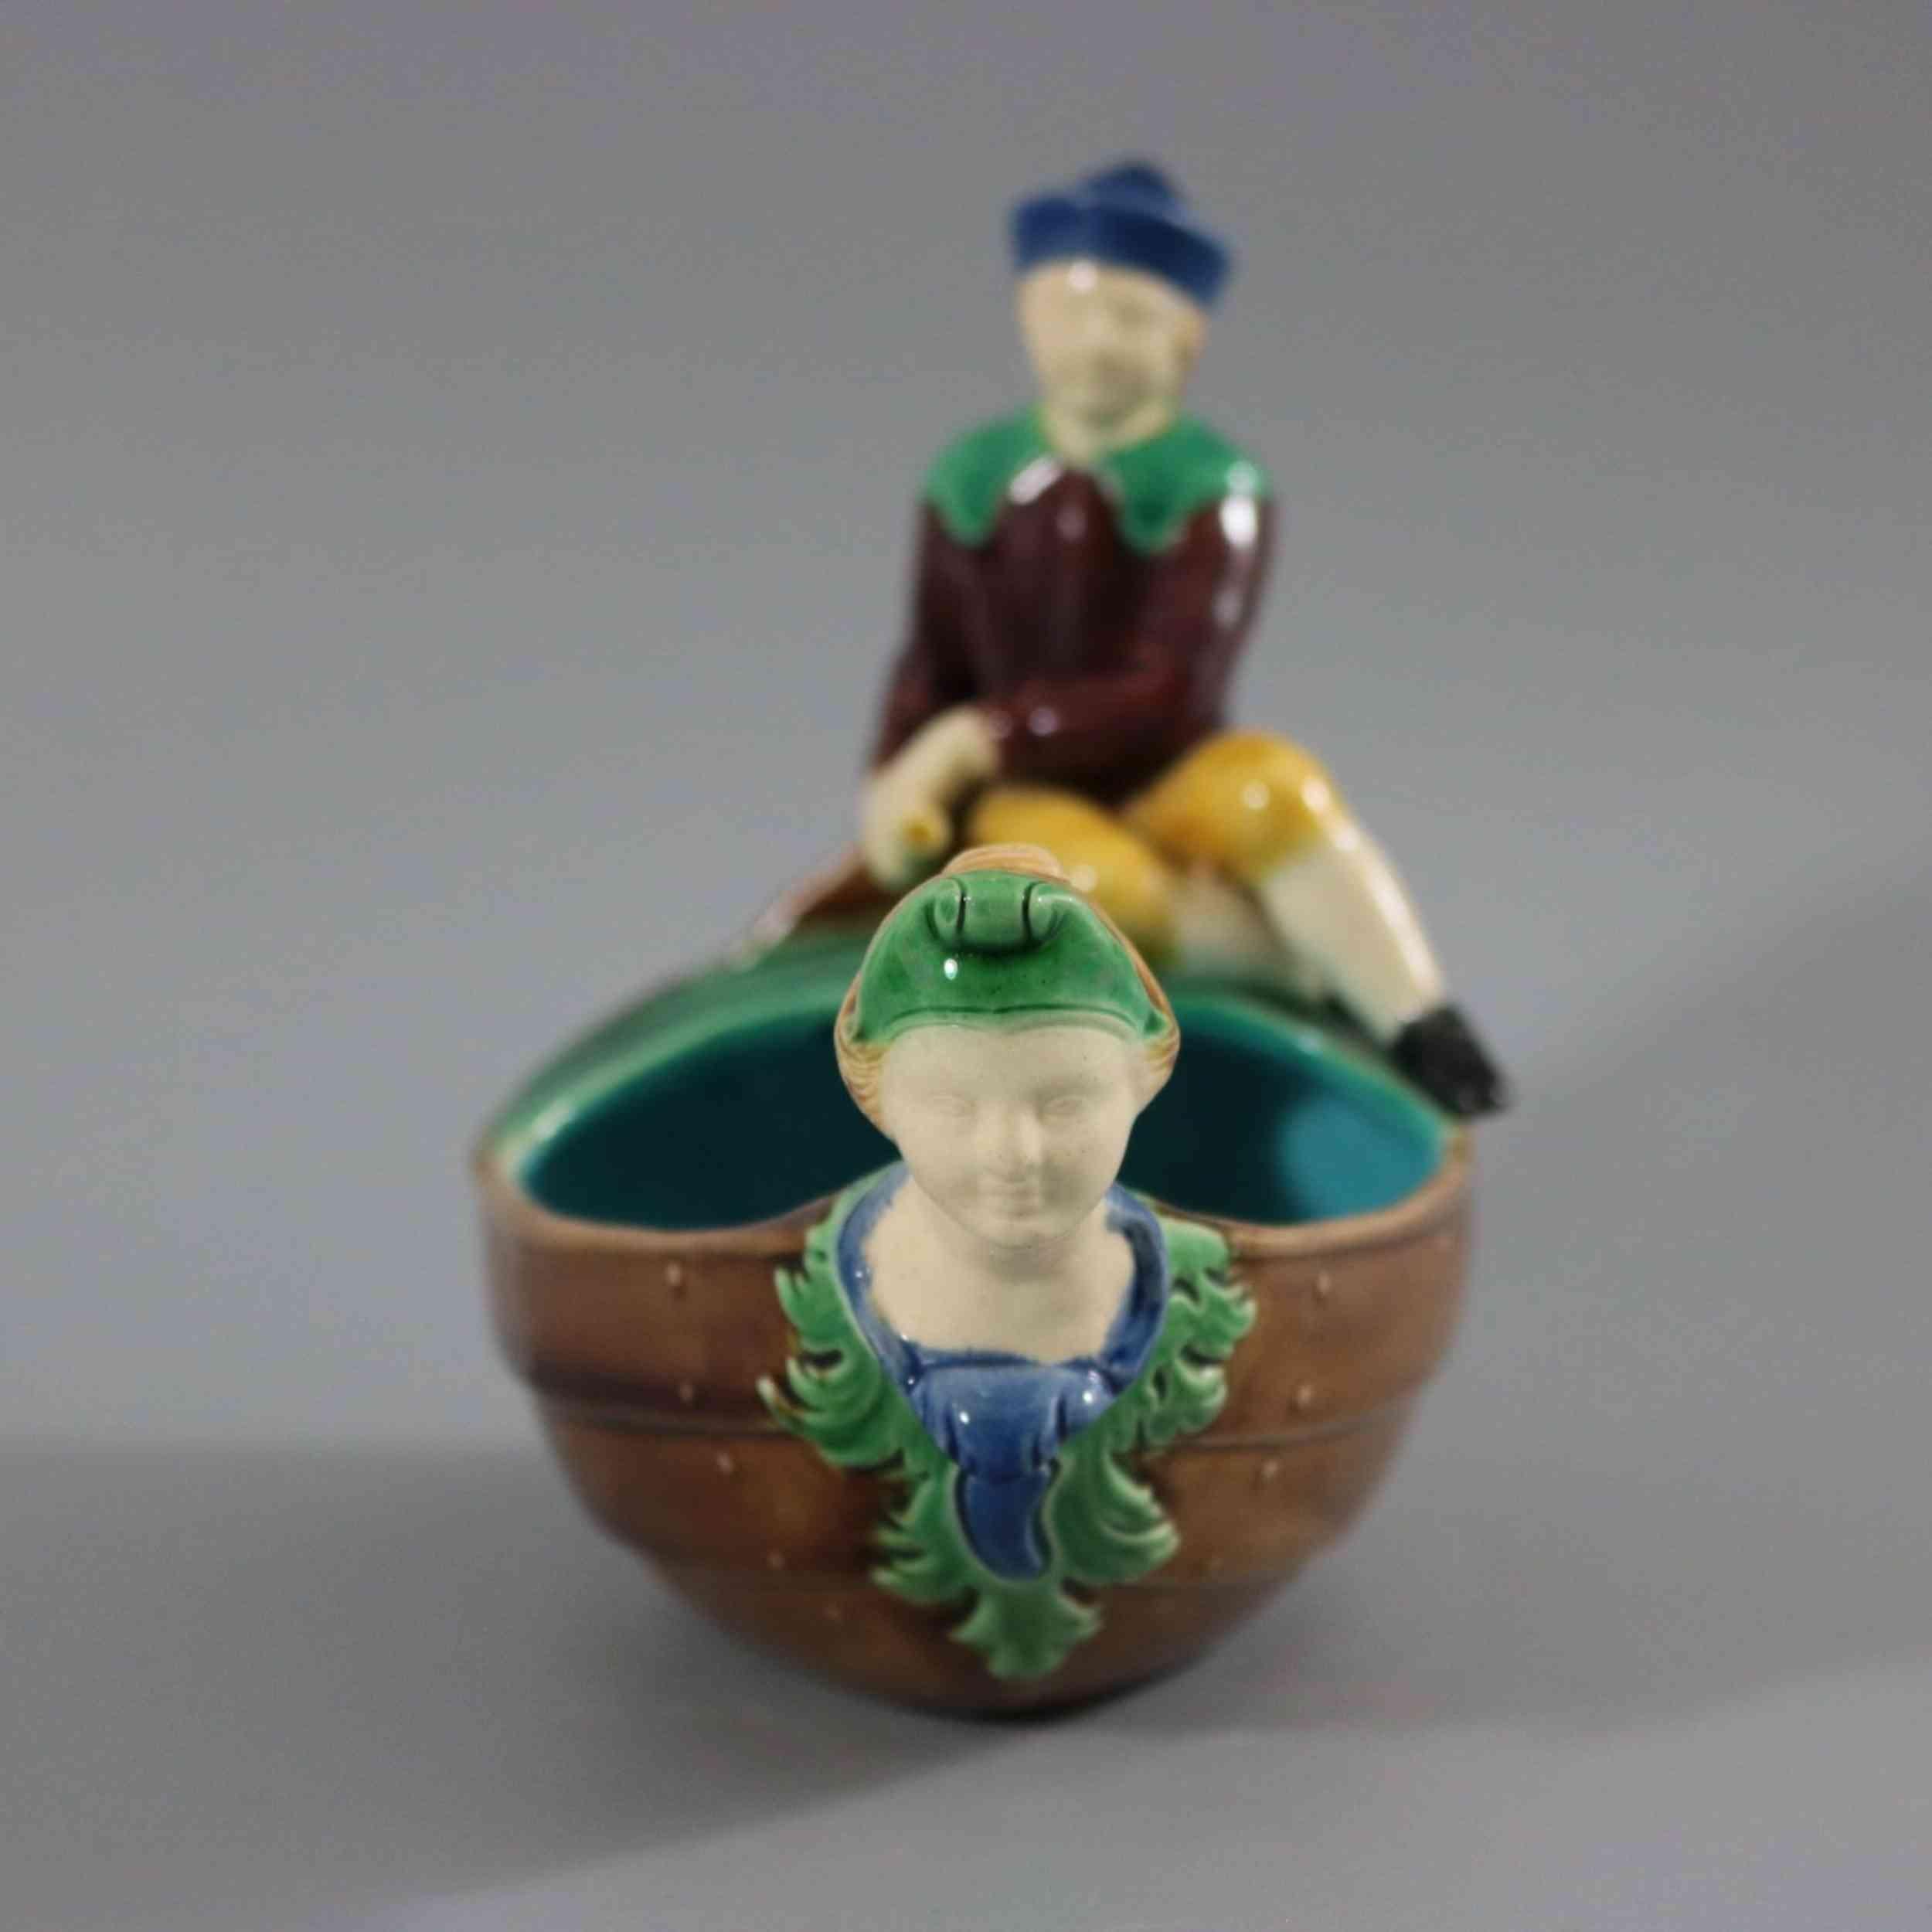 Plat en majolique de Minton représentant un bateau avec un garçon assis à l'arrière, dirigeant le gouvernail. Une figure de proue en forme de buste de femme à l'avant du bateau. Coloration : brun, vert, turquoise, sont prédominants. La pièce porte